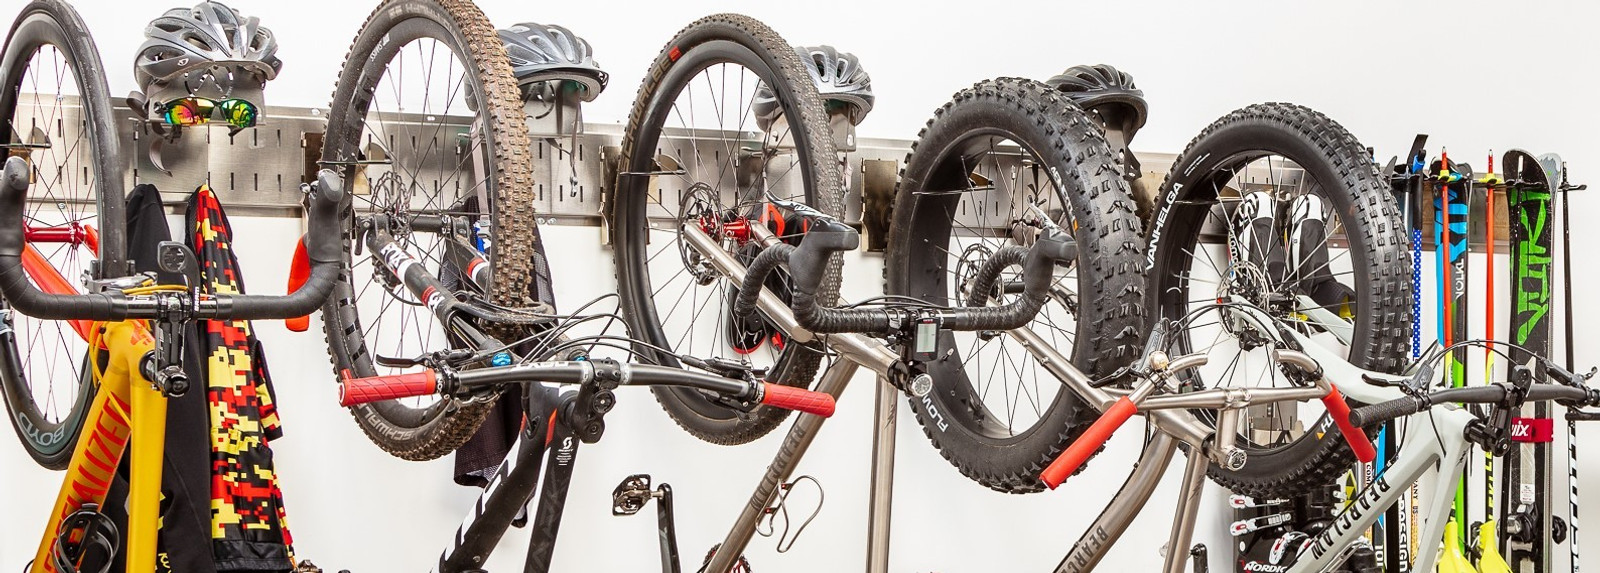 Cycling Gear Storage